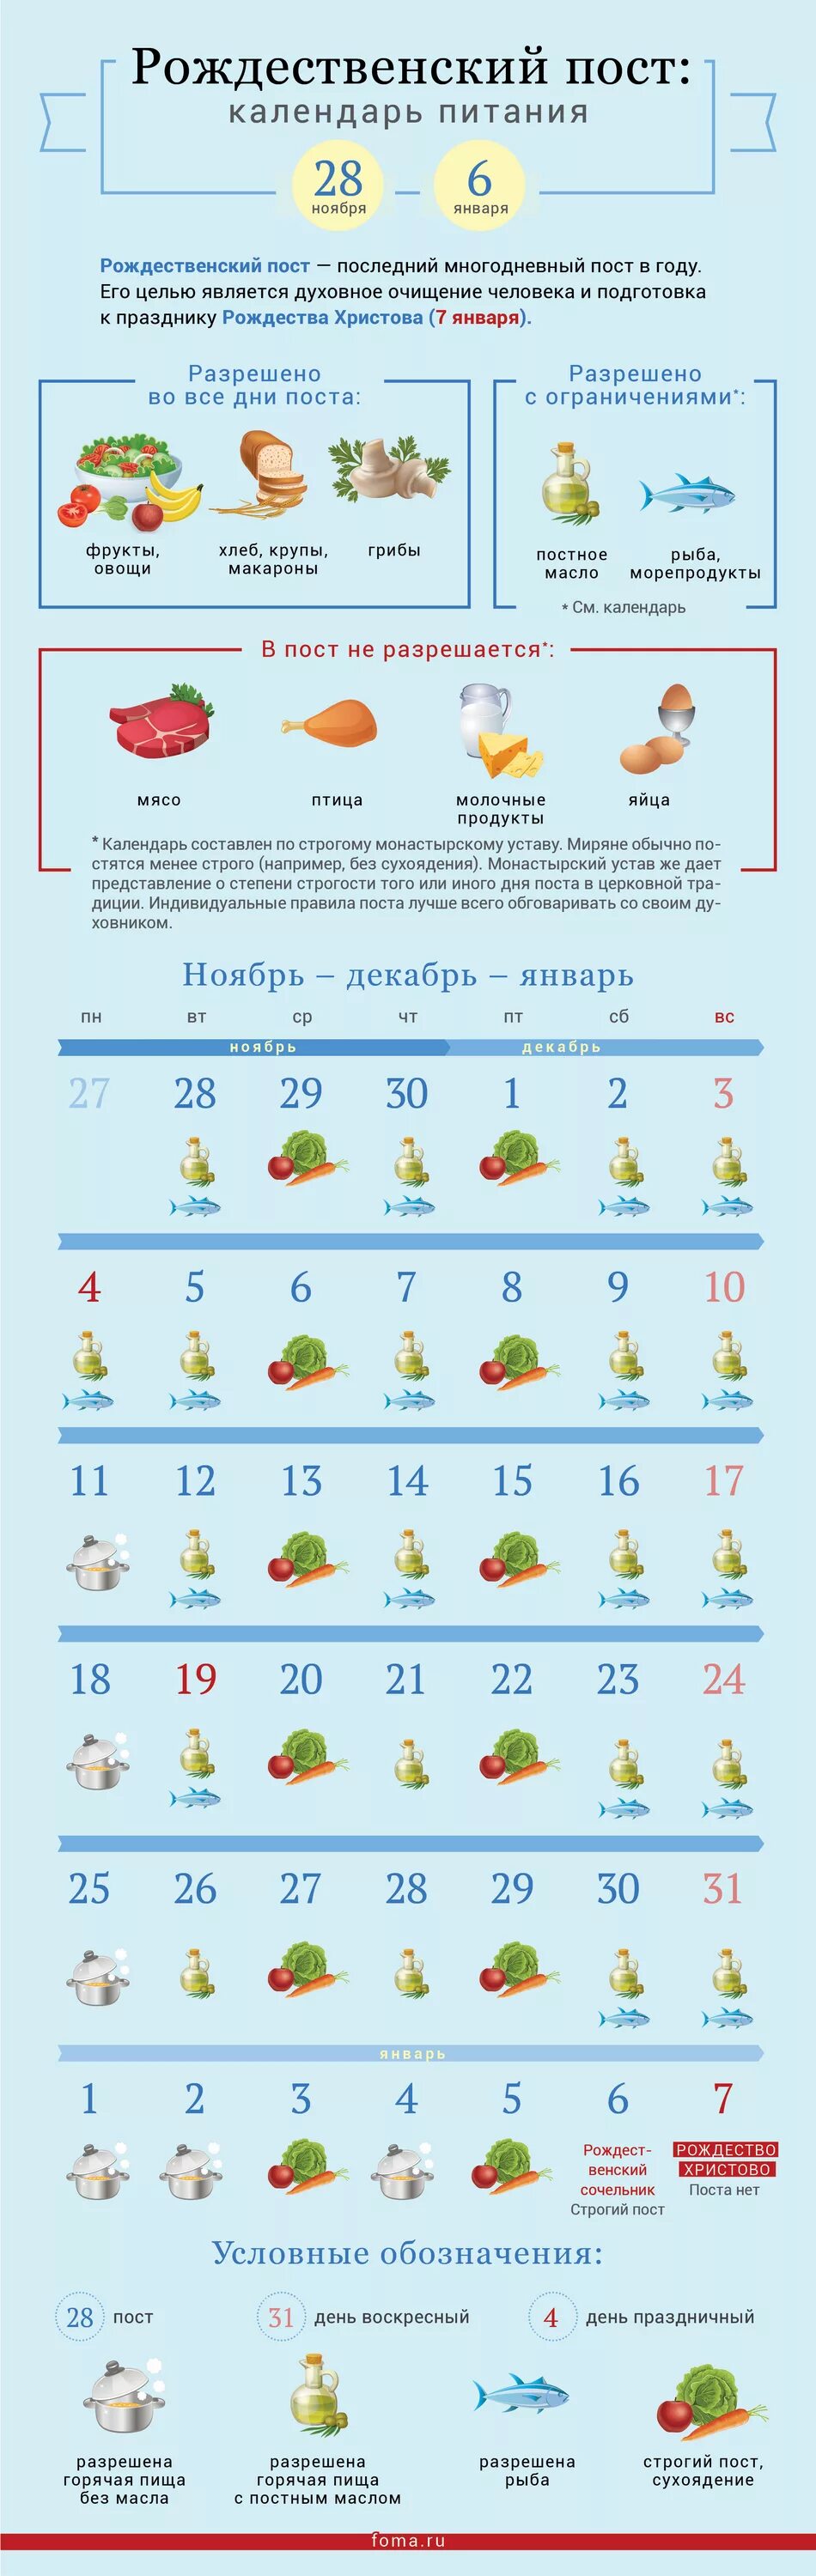 Рождественский пост 2022 календарь питания по дням. Календарь питания Рождественского поста на 2022 год. Рождественский пост 2021-2022 календарь питания. Рождественский пост 2022-2023 питание по дням.